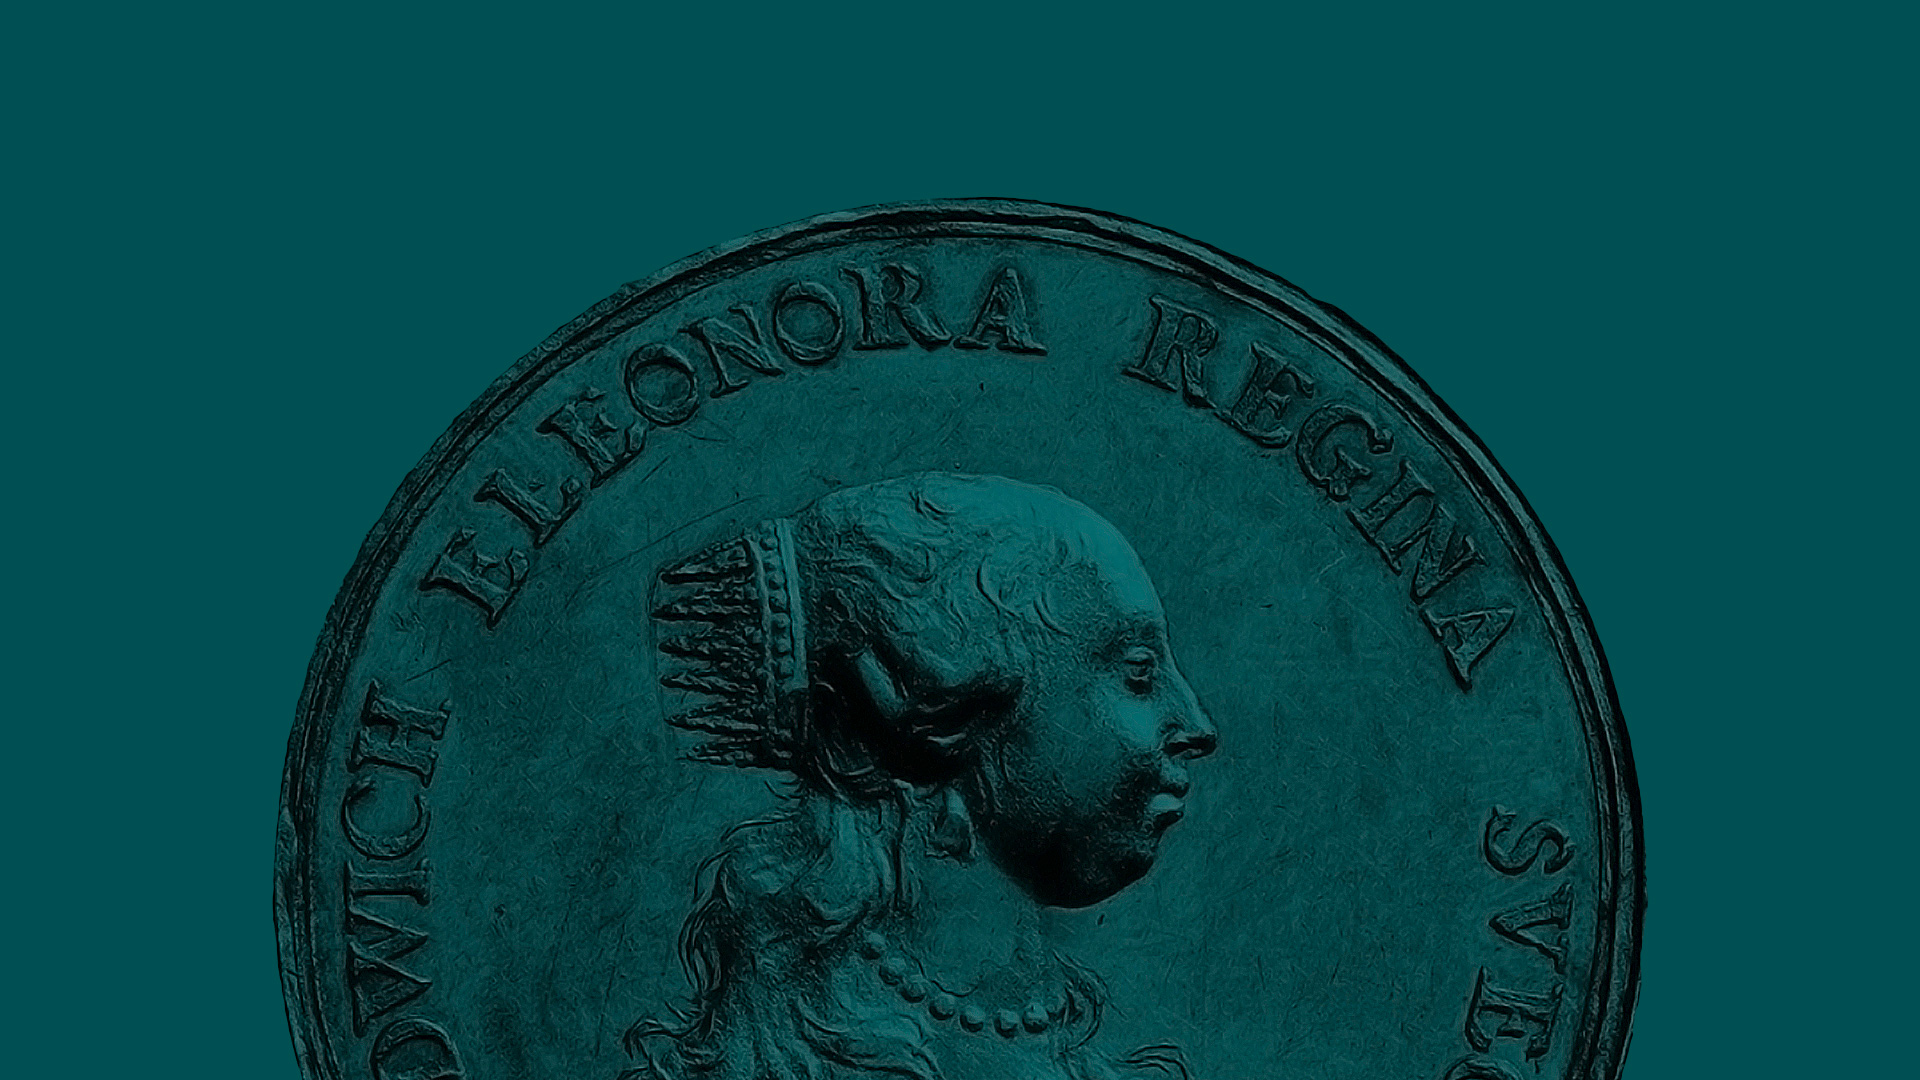 Stort svenskt mynt med regenten Hedvig Eleonora Regina